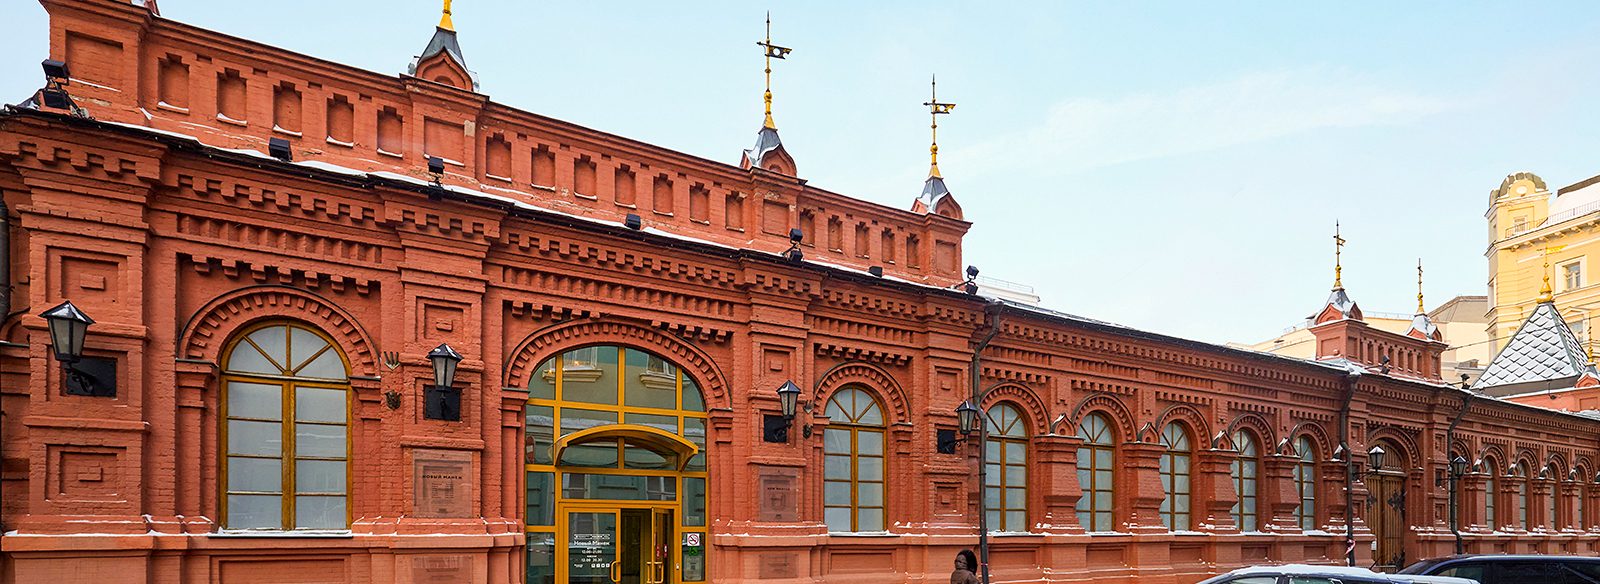 Посетители увидят около 100 предметов более чем из 20 музеев и частных собраний. Фото: сайт мэра Москвы